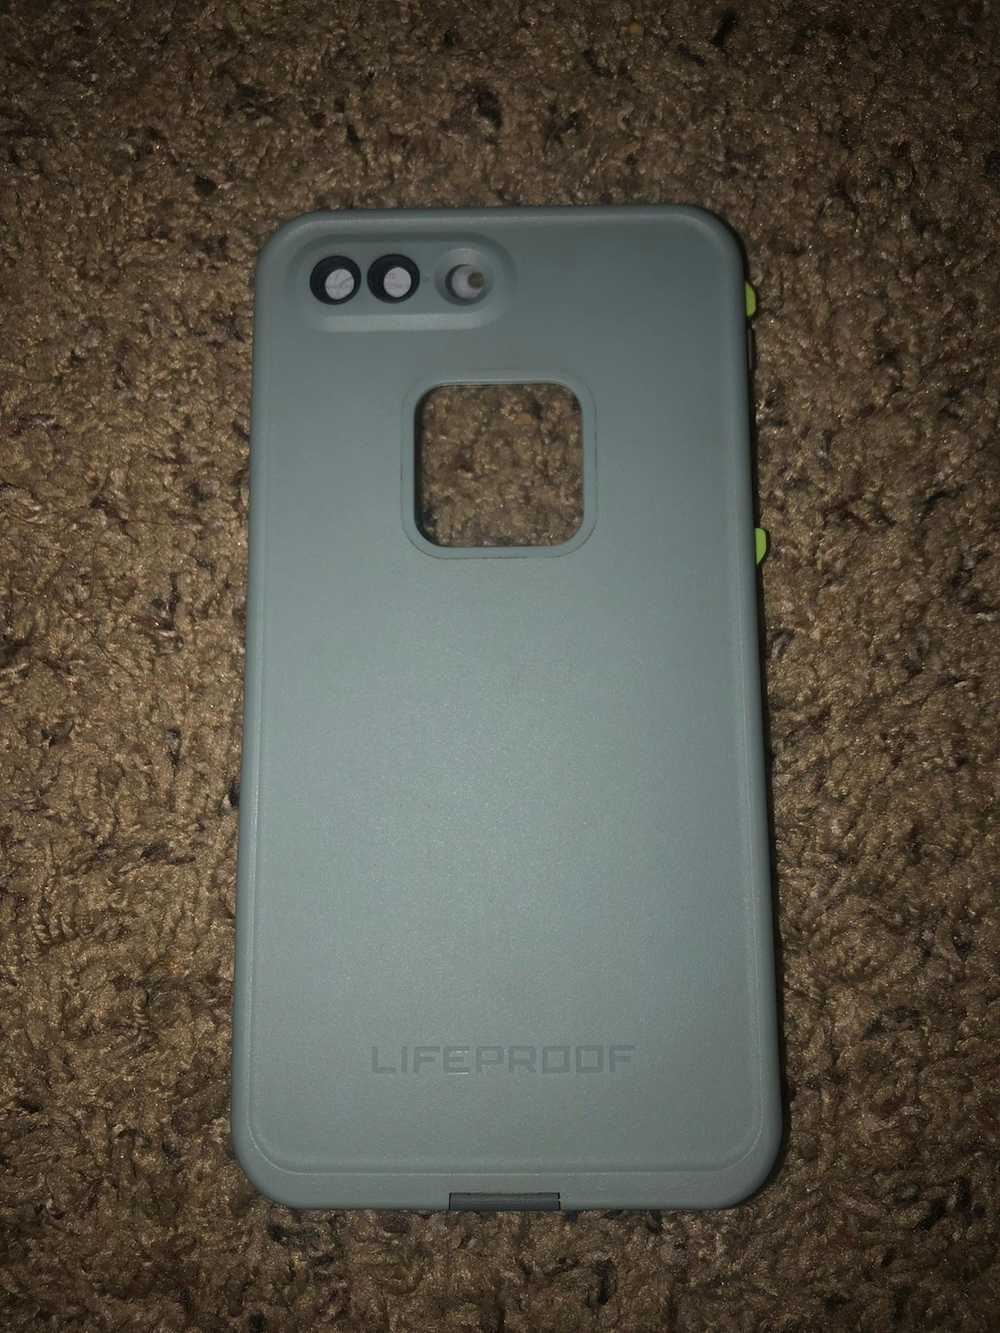 Lifeproof Lifeproof iPhone 8+ waterproof case - image 2